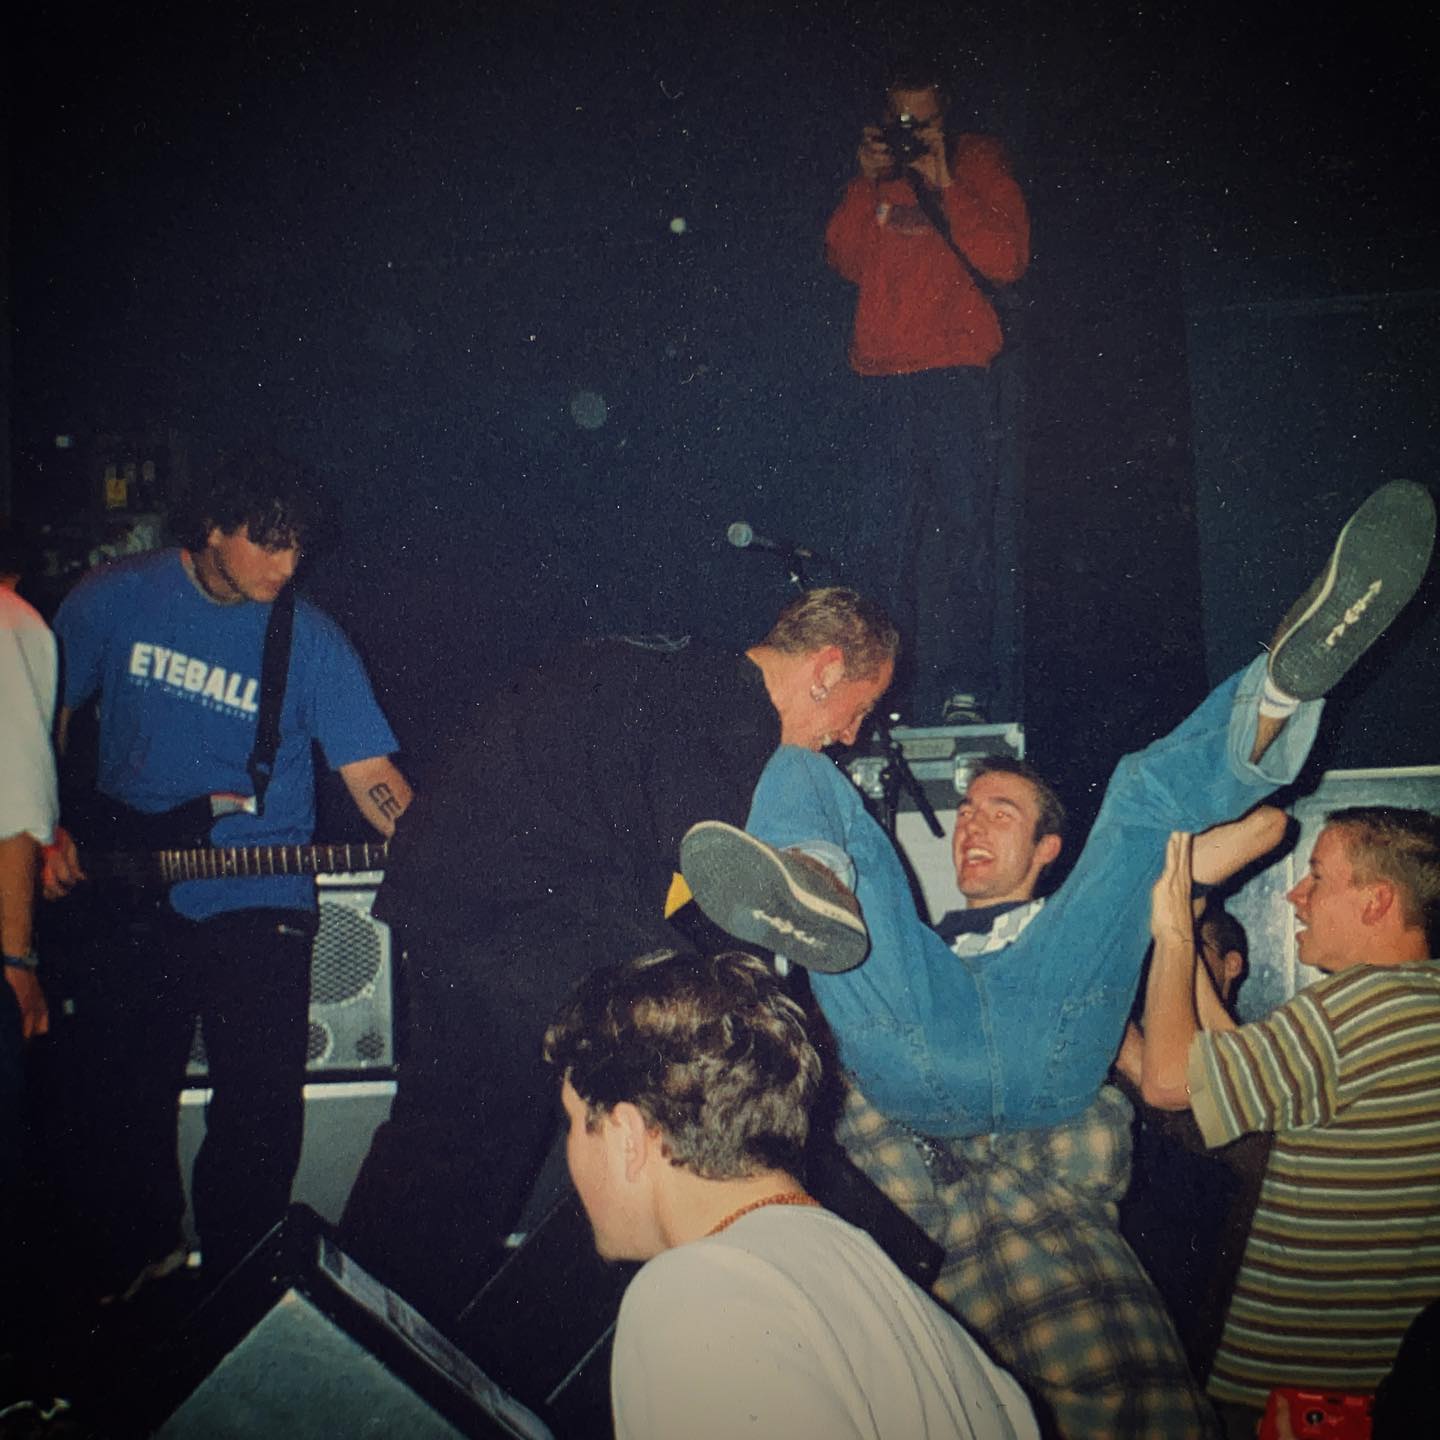 Spirit 84 - Hedon Zwolle (NL) - 14 November 1997 #hardcore #youthcrew #gigpic by @twentylandcrew